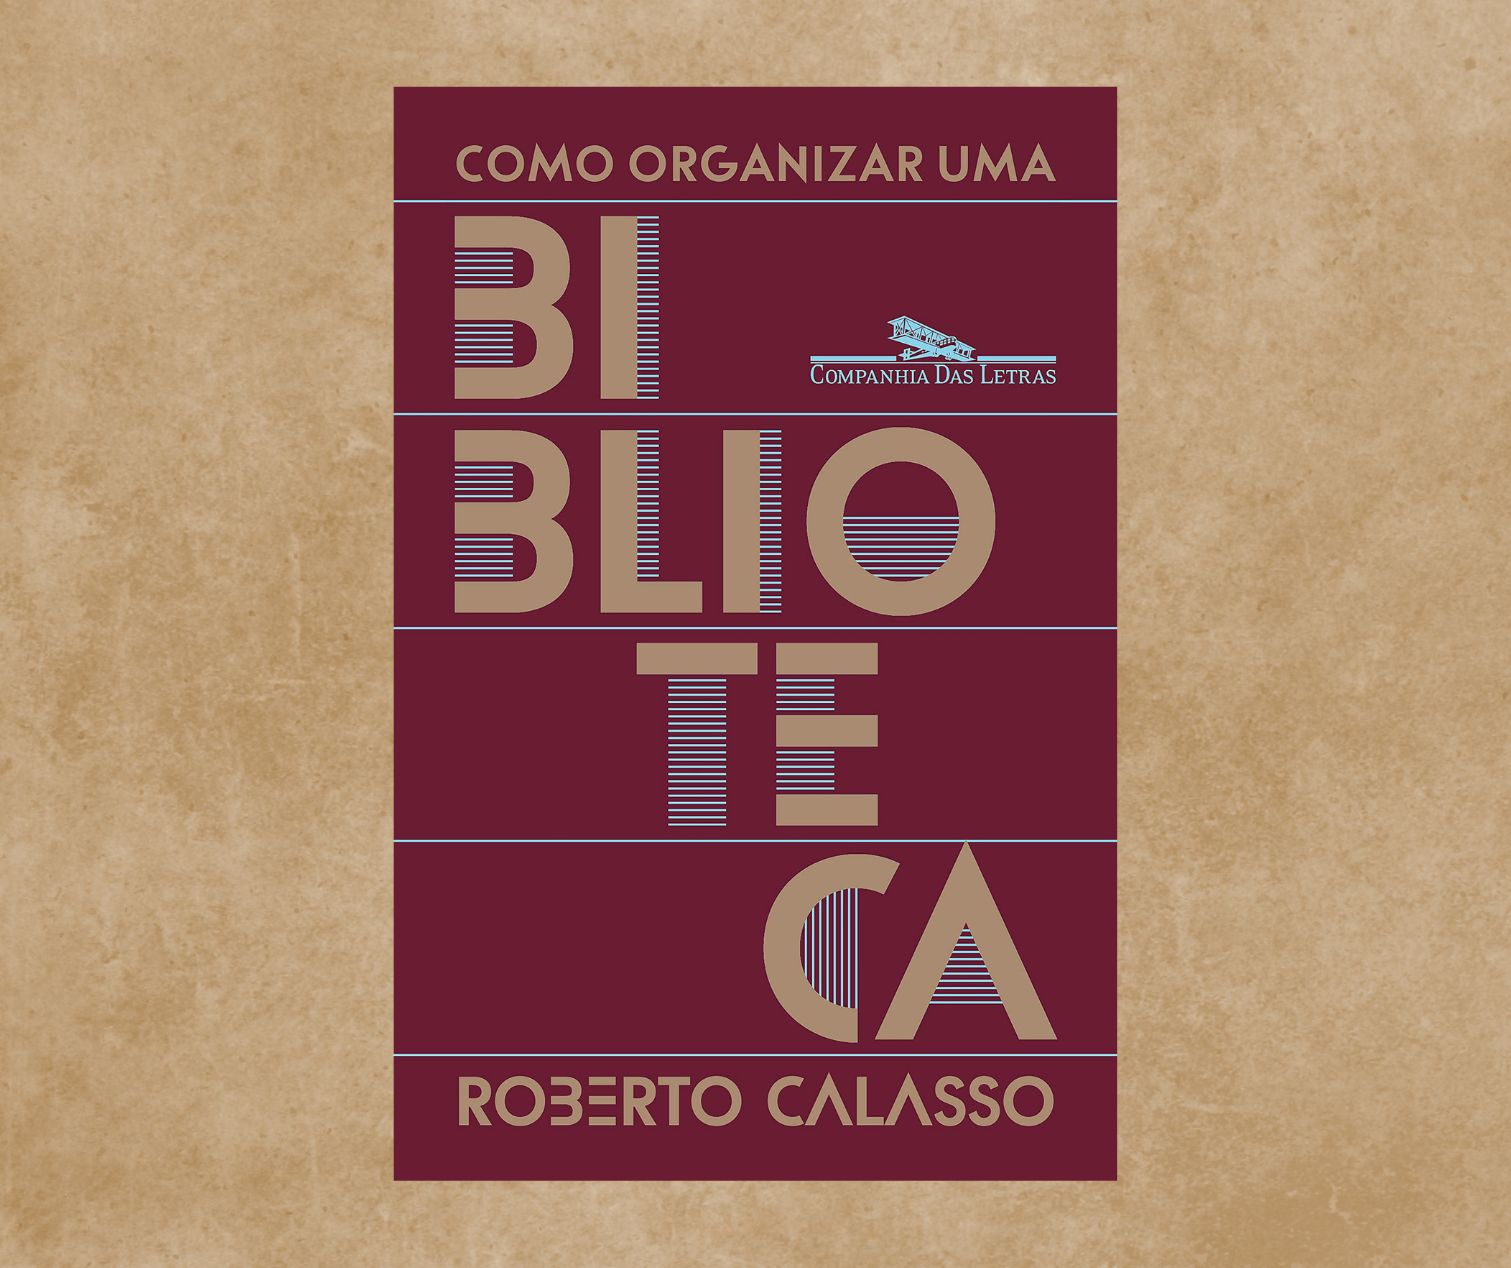 Resenha: Como organizar uma biblioteca, de Roberto Calasso